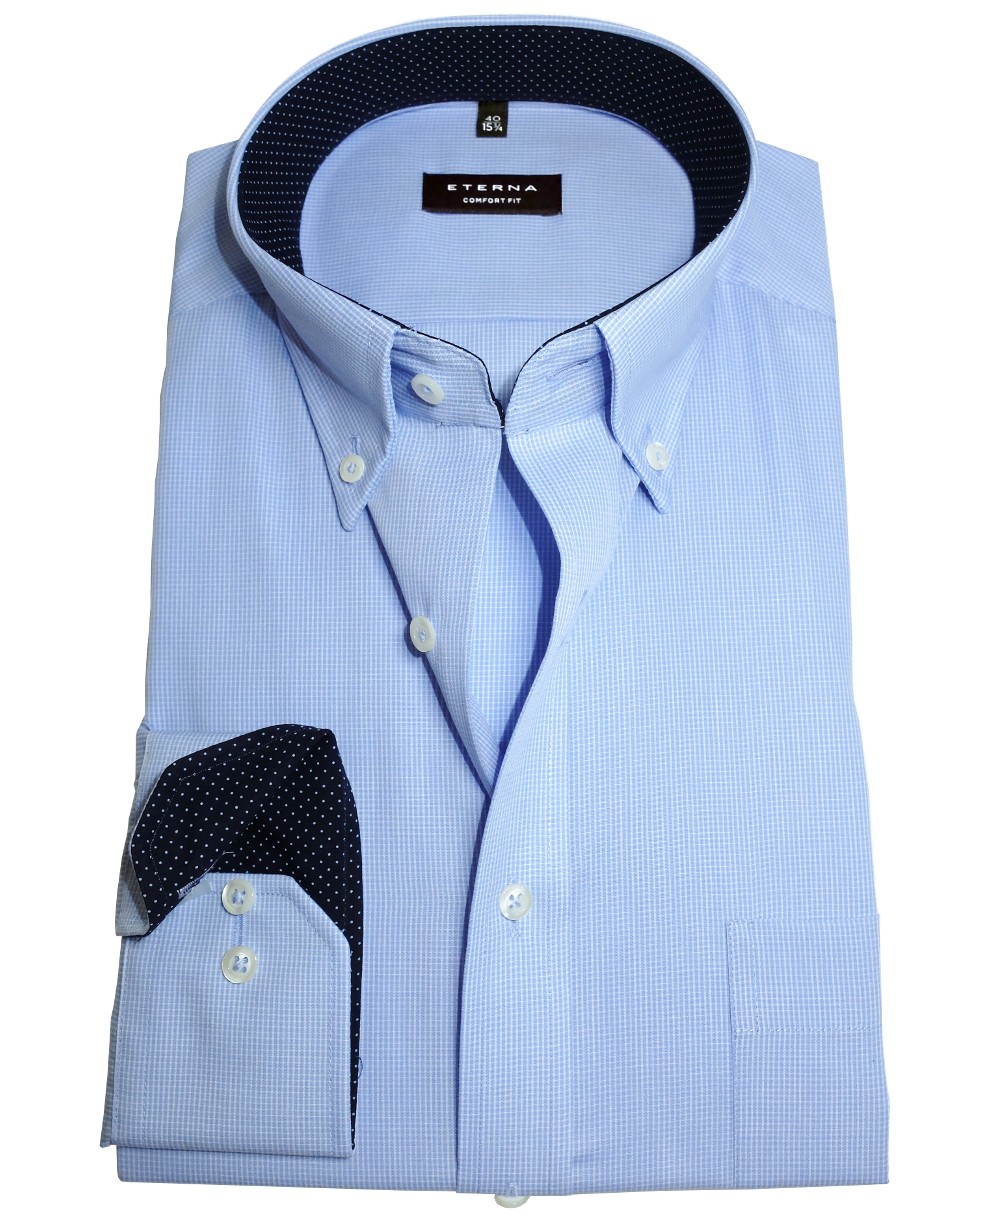 Langarmhemd in zu hellblau führender Herrenmode Fit - Comfort Marken fairen Gitterkaro Patches Business eterna Hochwertige